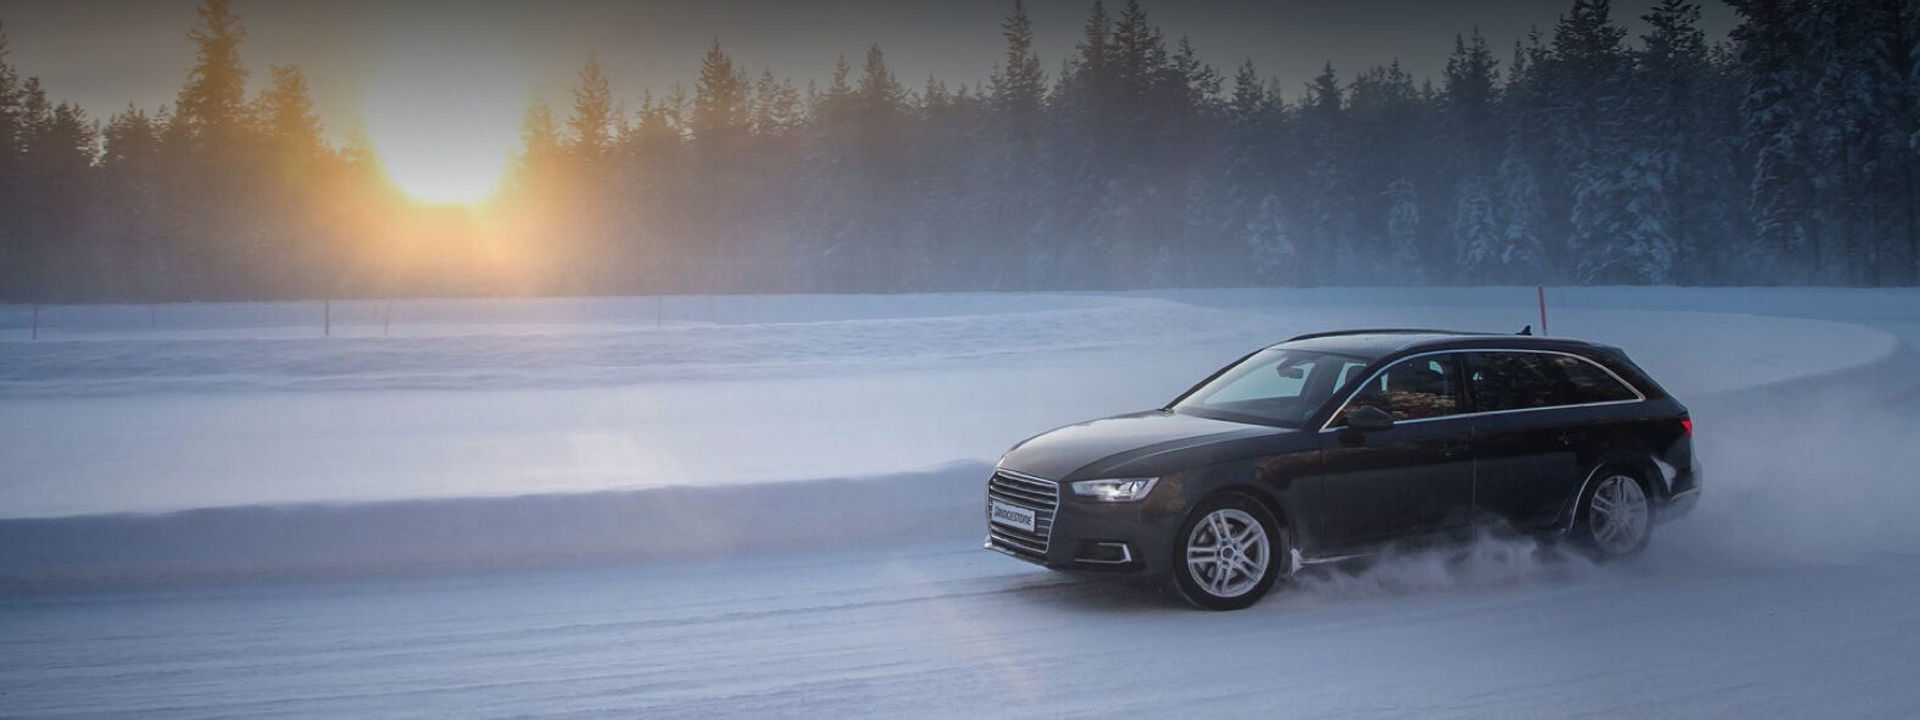 Crni Audi opremljen Blizzak LM005 zimskim gumama skreće oko snježnog nanosa na snijegom prekrivenoj cesti usred šume. 